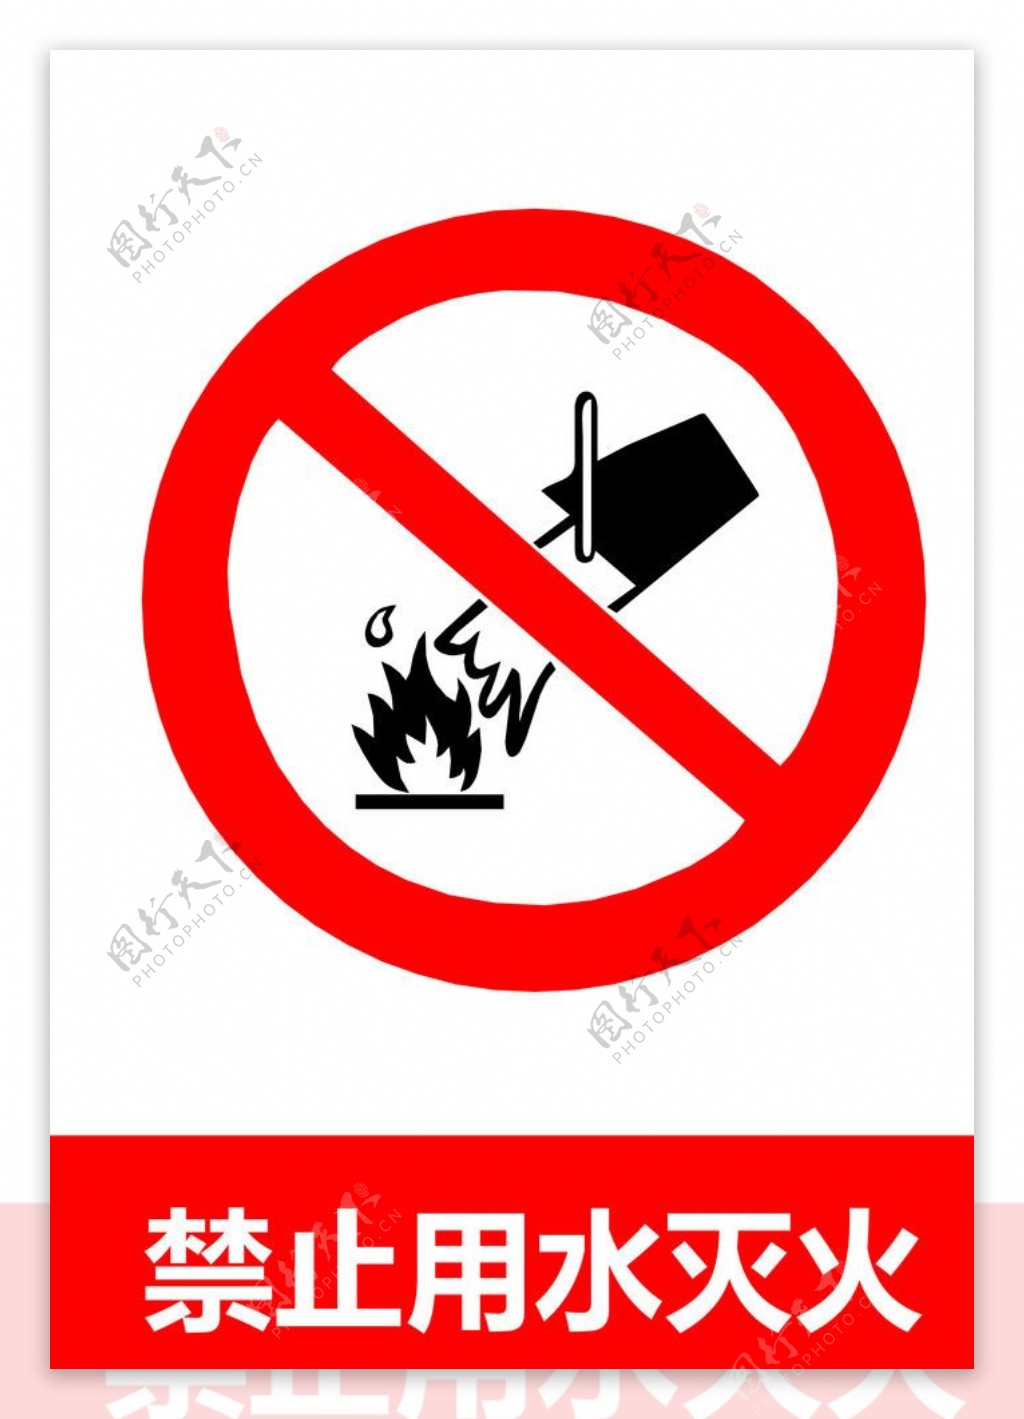 禁止用火灭火图片